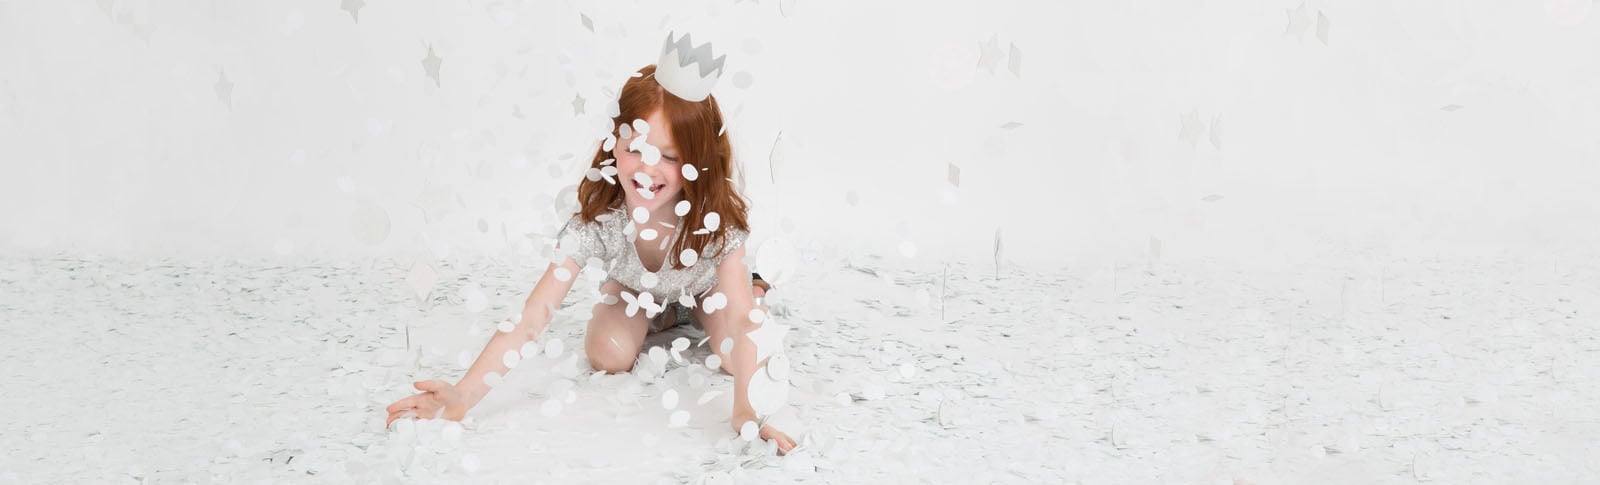 Suggerimenti e idee per la festa di compleanno di una bambina a tema regina delle nevi